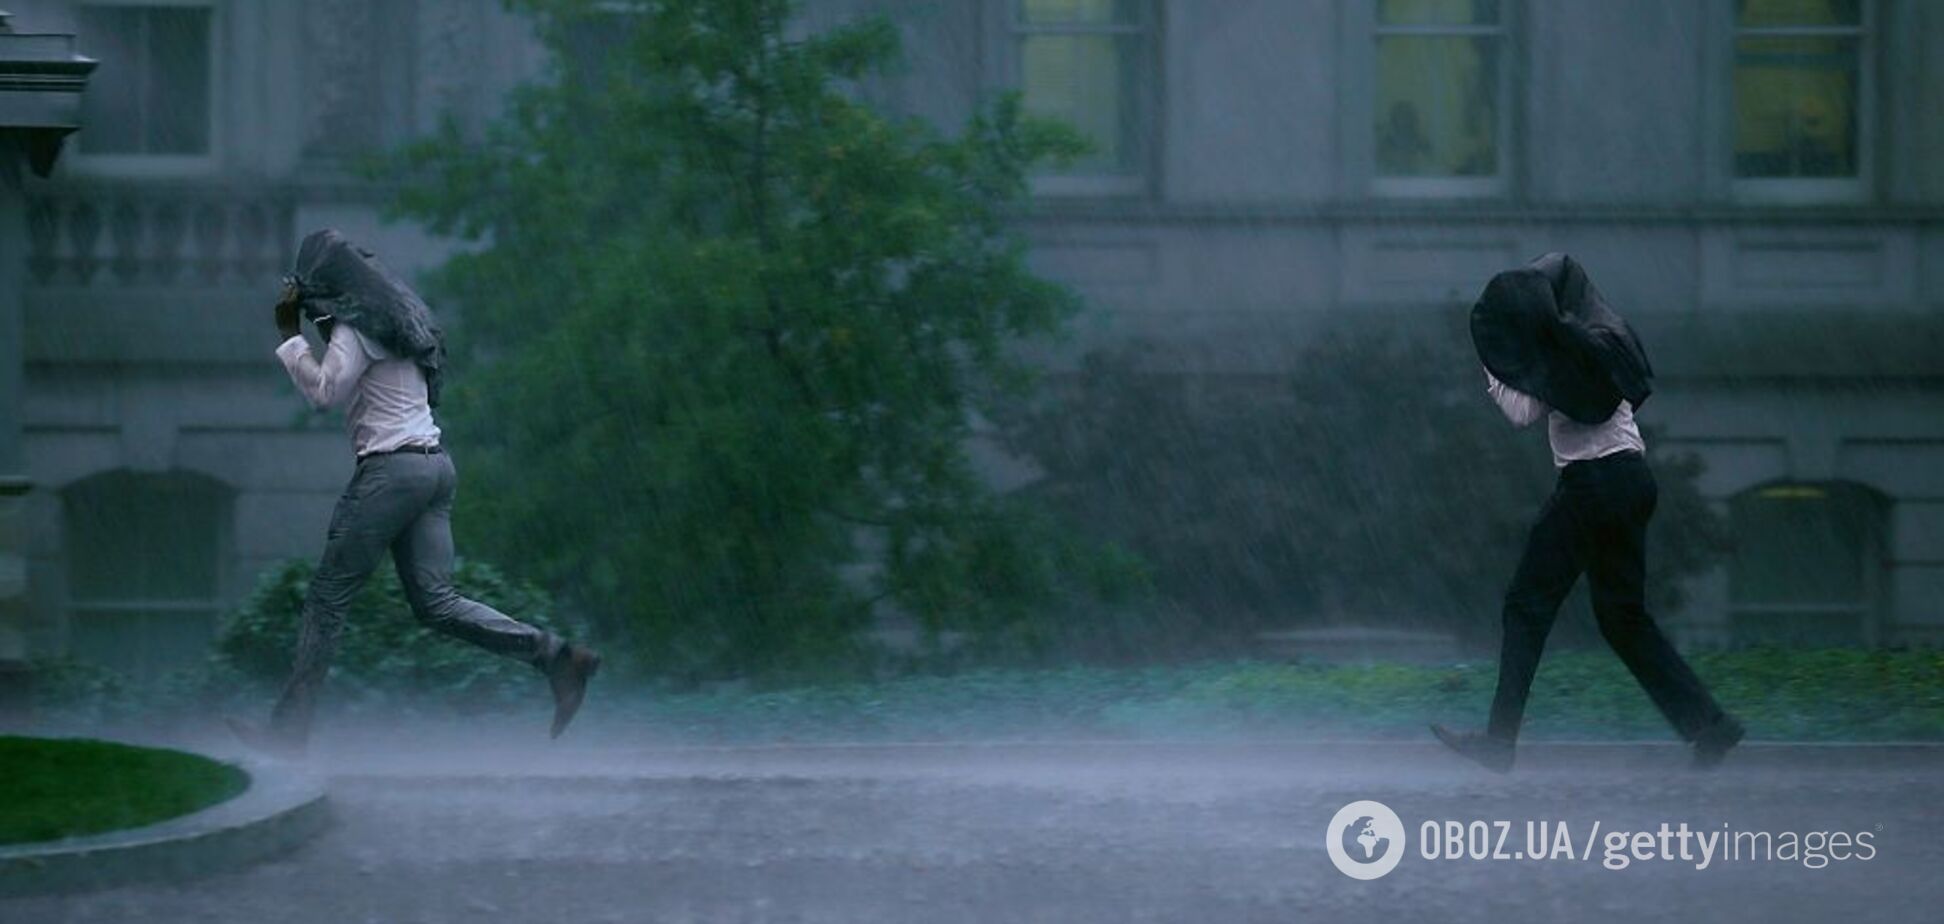 Гряде потоп: синоптик уточнив прогноз погоди в Україні